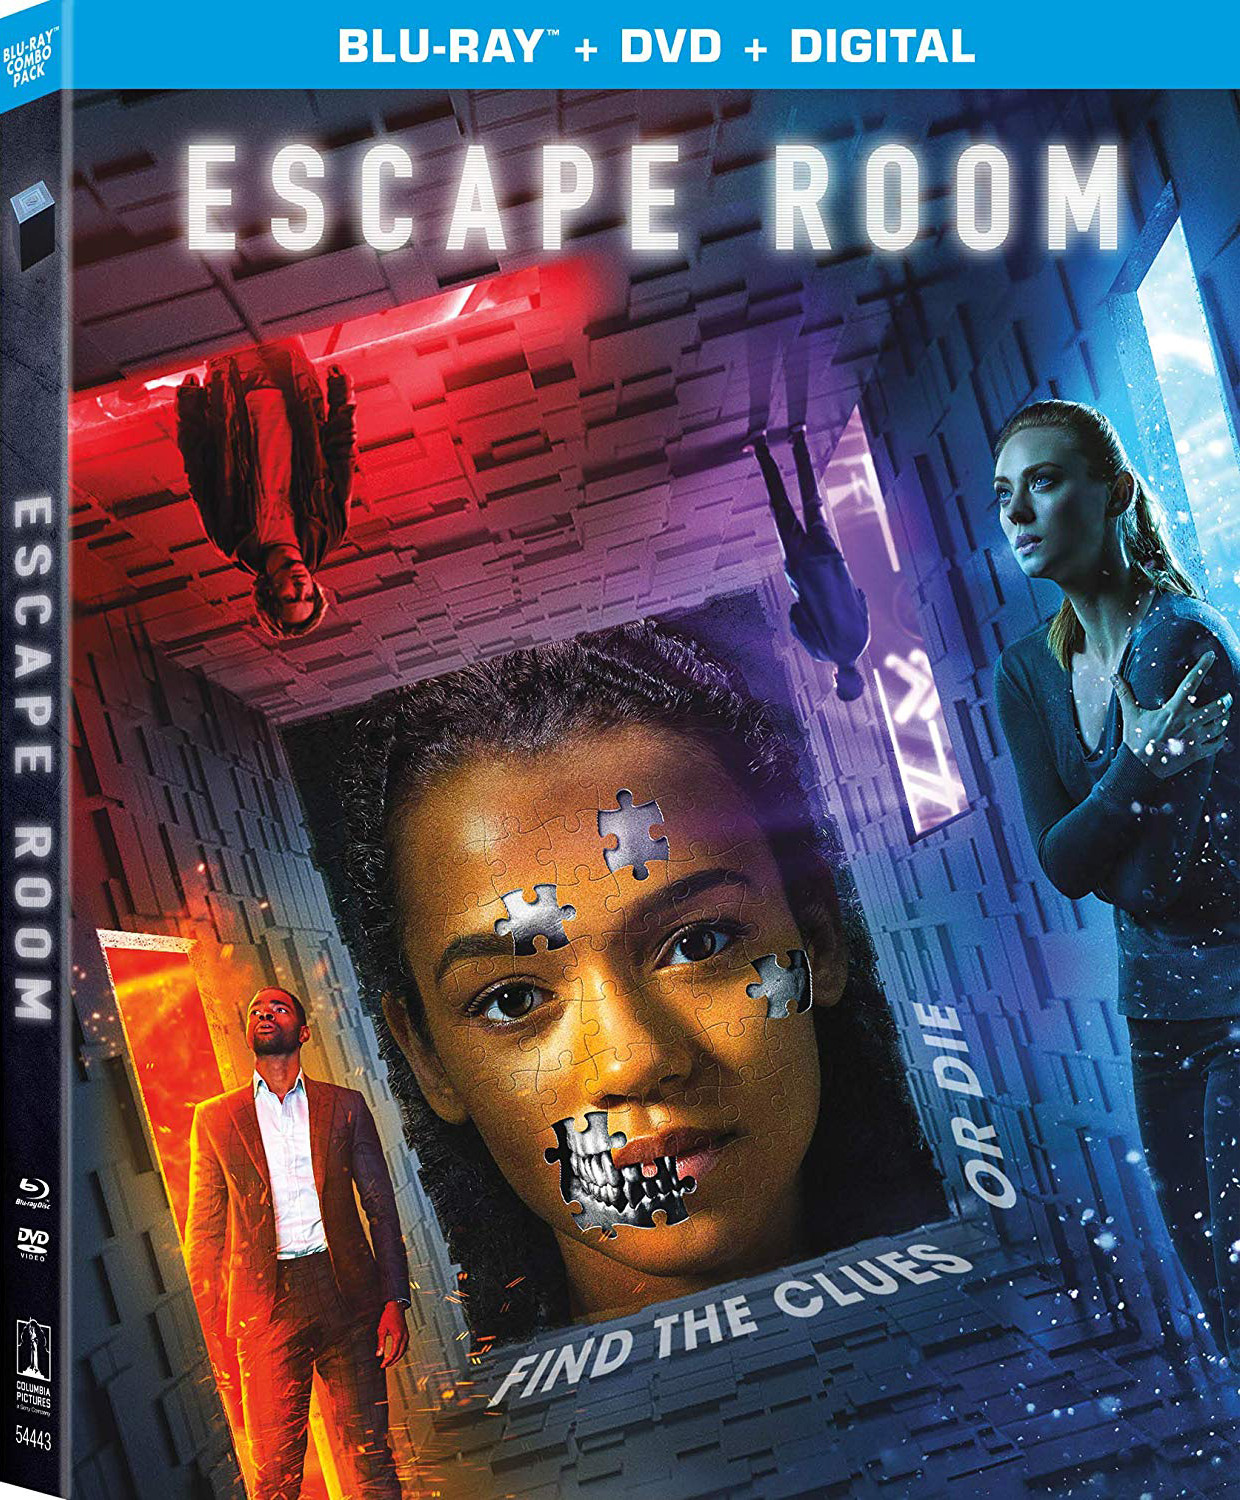 à¸œà¸¥à¸à¸²à¸£à¸„à¹‰à¸™à¸«à¸²à¸£à¸¹à¸›à¸ à¸²à¸žà¸ªà¸³à¸«à¸£à¸±à¸š escape room blu ray